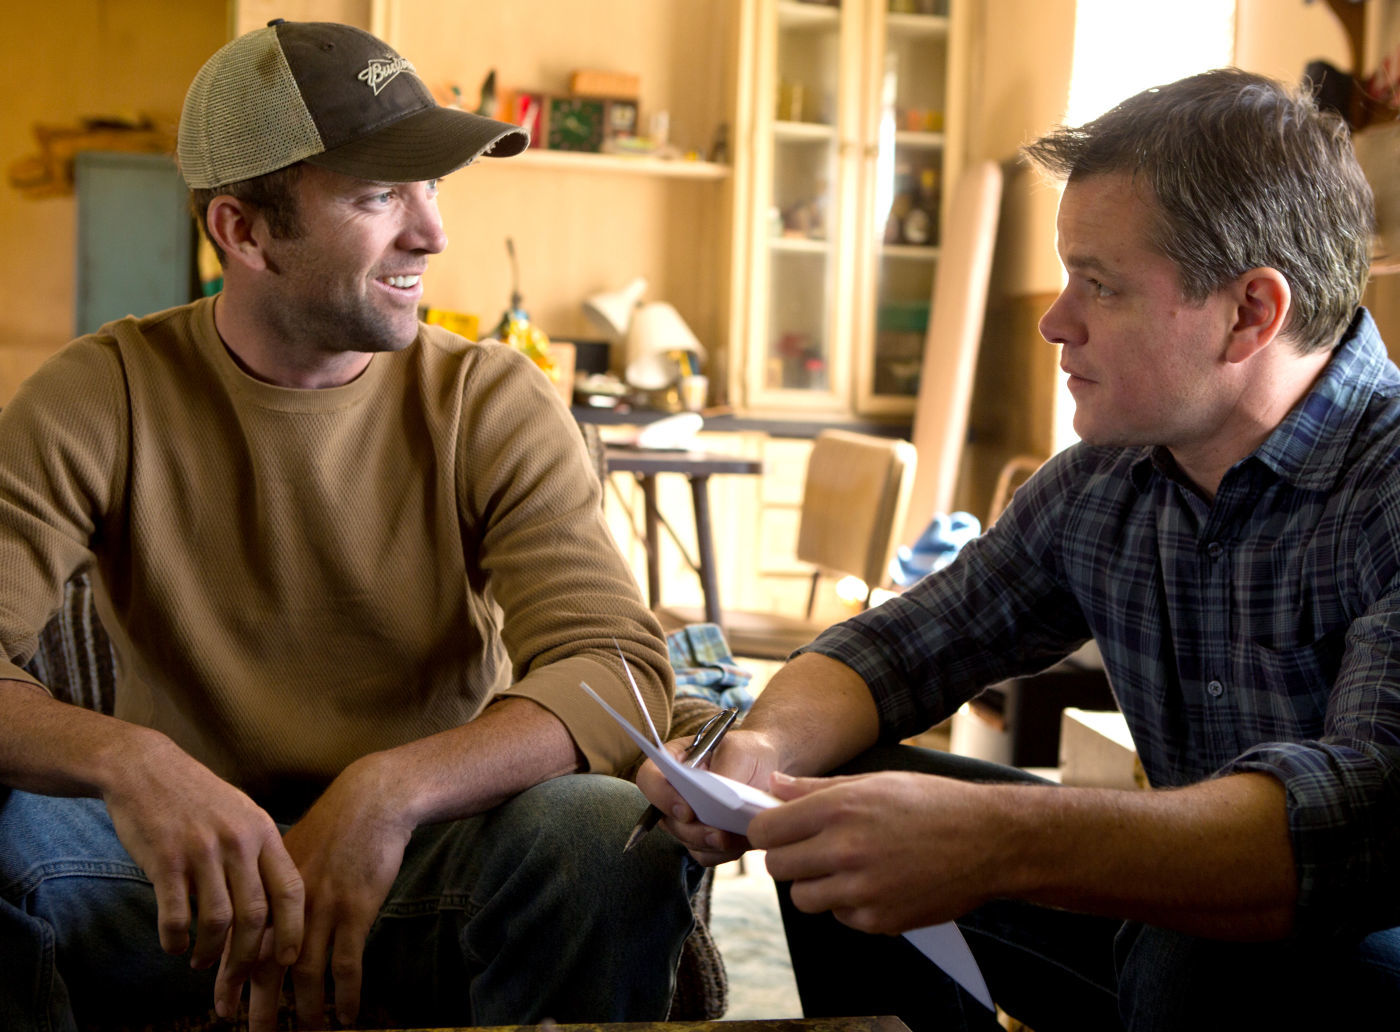 Tài tử Black đóng cùng tài tử Matt Damon, người đồng viết kịch bản cho bộ phim “Promised Land” (Miền Đất Hứa ) năm 2012. (Ảnh: MovieStillsDB)